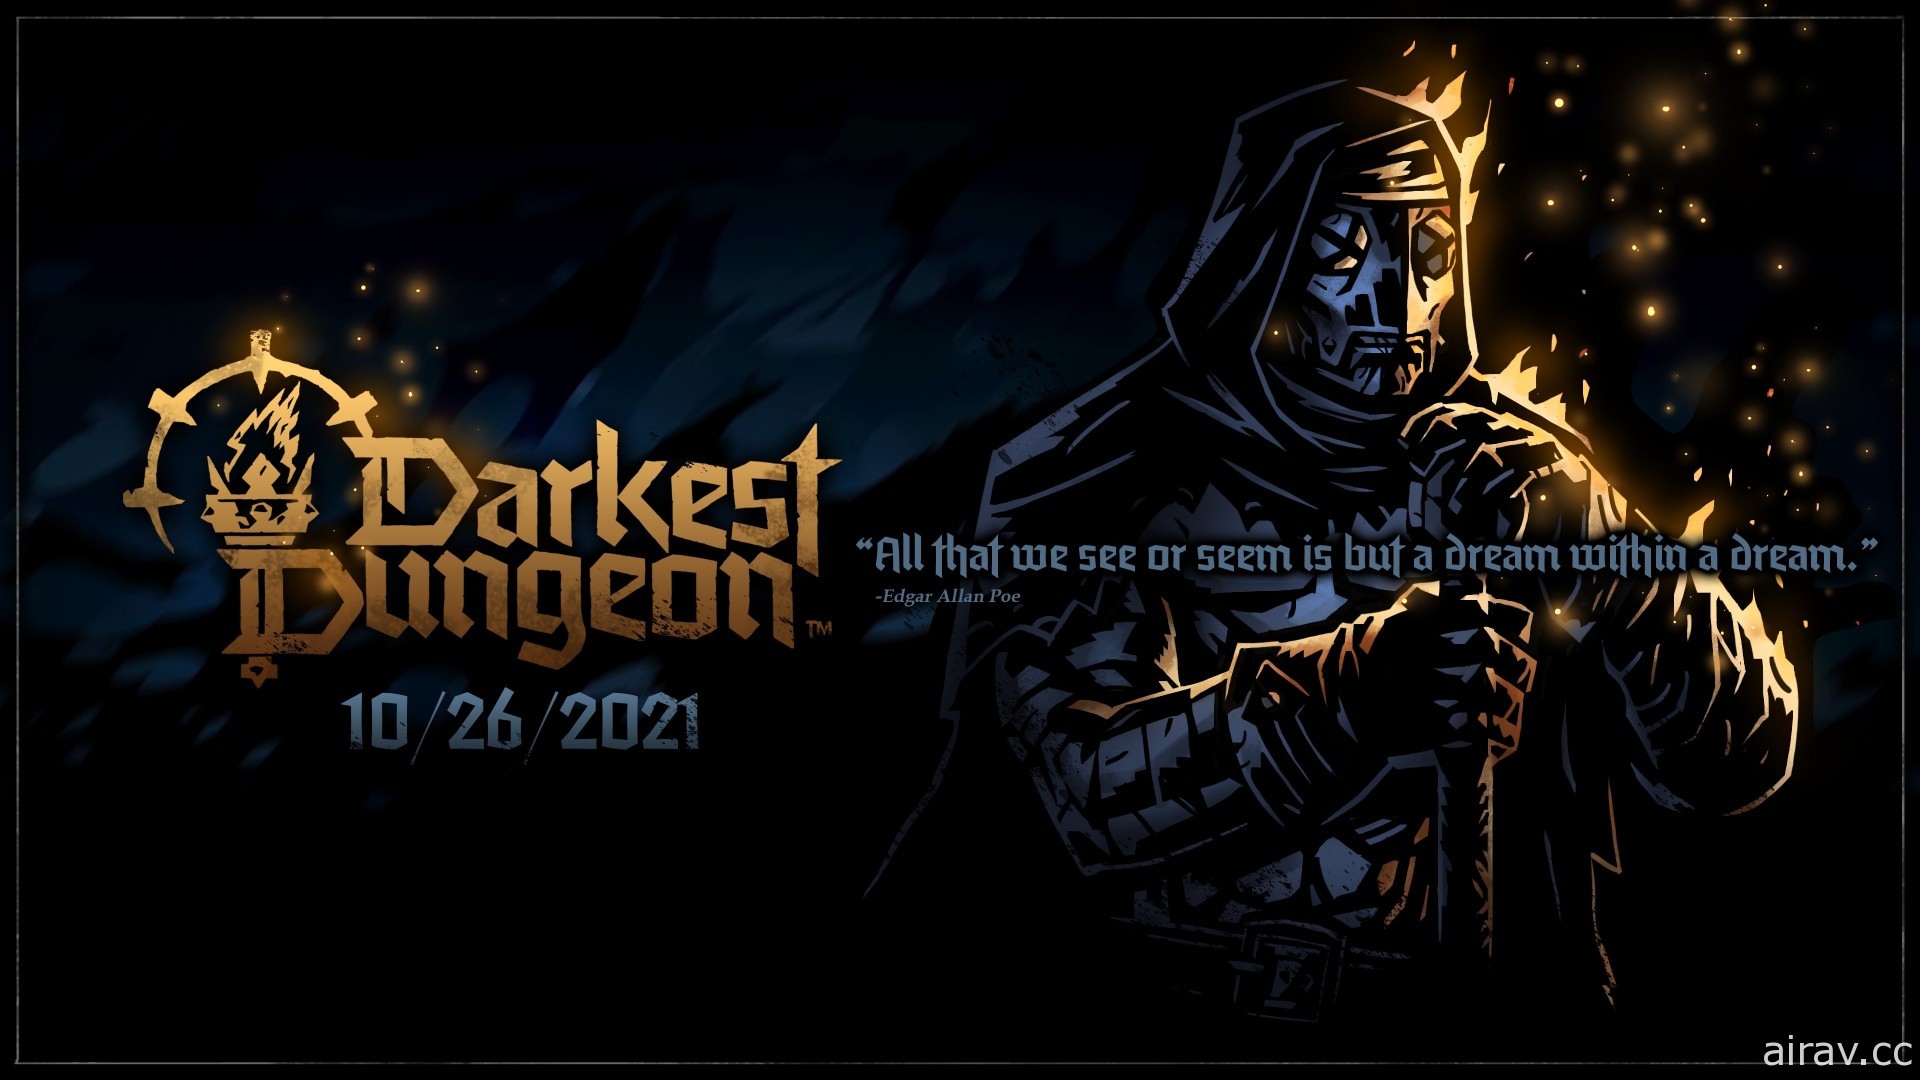 地牢探險遊戲系列新作《暗黑地牢 2》10 月底於 EGS 平台展開搶先體驗